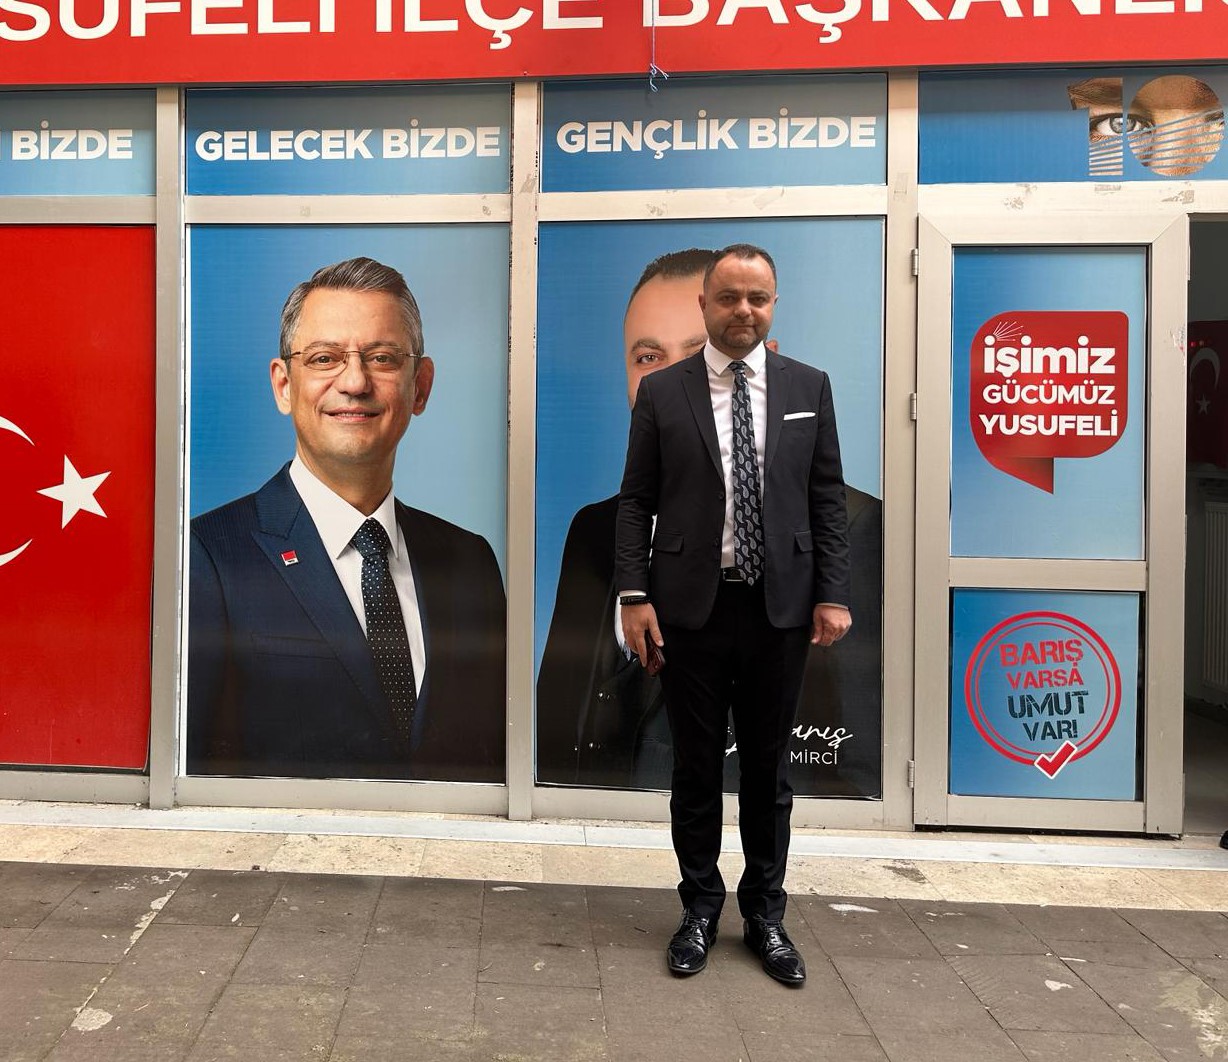 Yusufeli’nde seçim sonuçlarına AK Parti itiraz etti, CHP’nin oyu arttı
